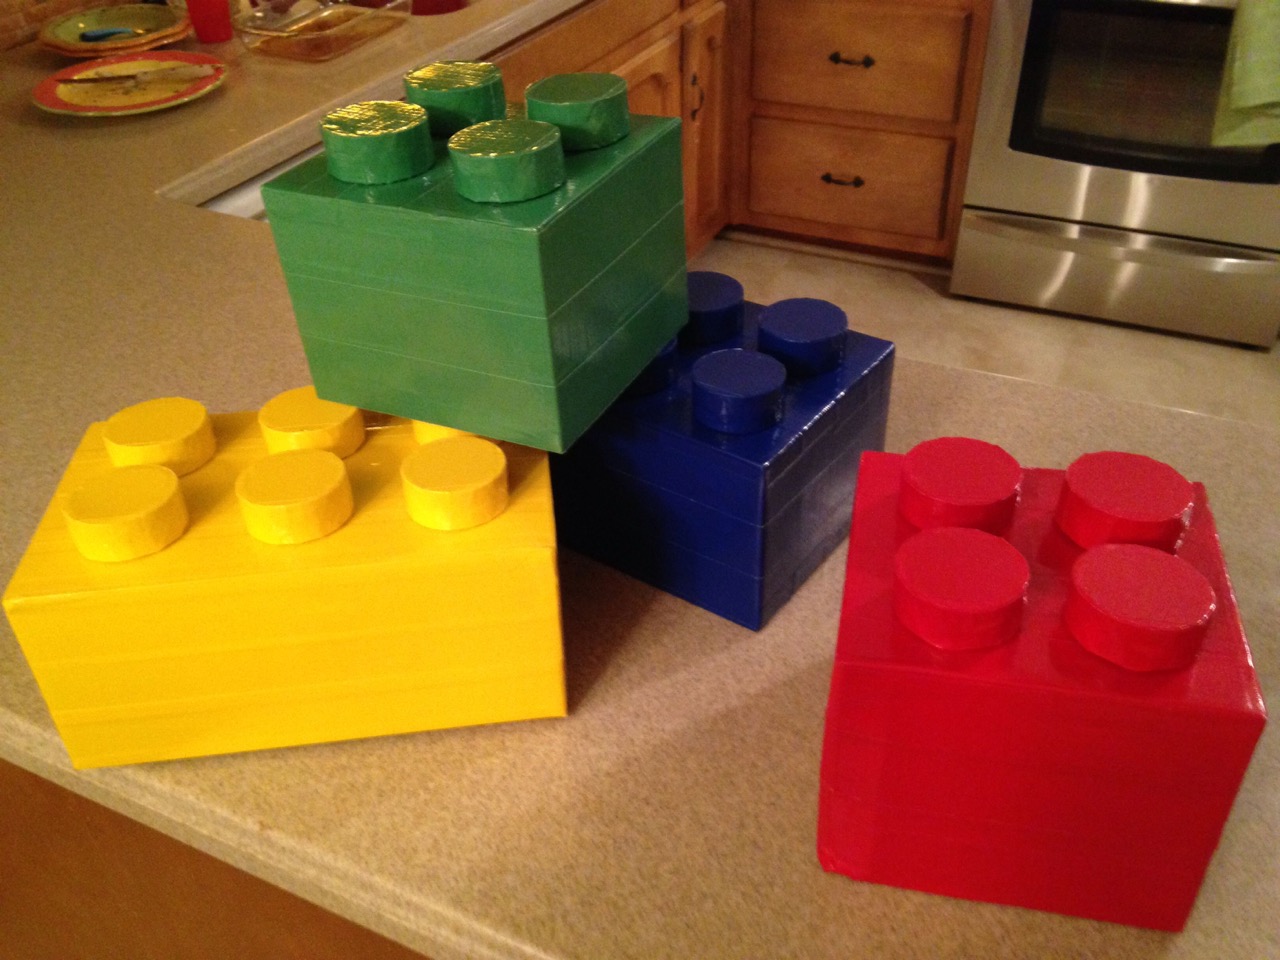 Lego Storage Bins: Ingenious Ways To Keep Your Bricks Organized